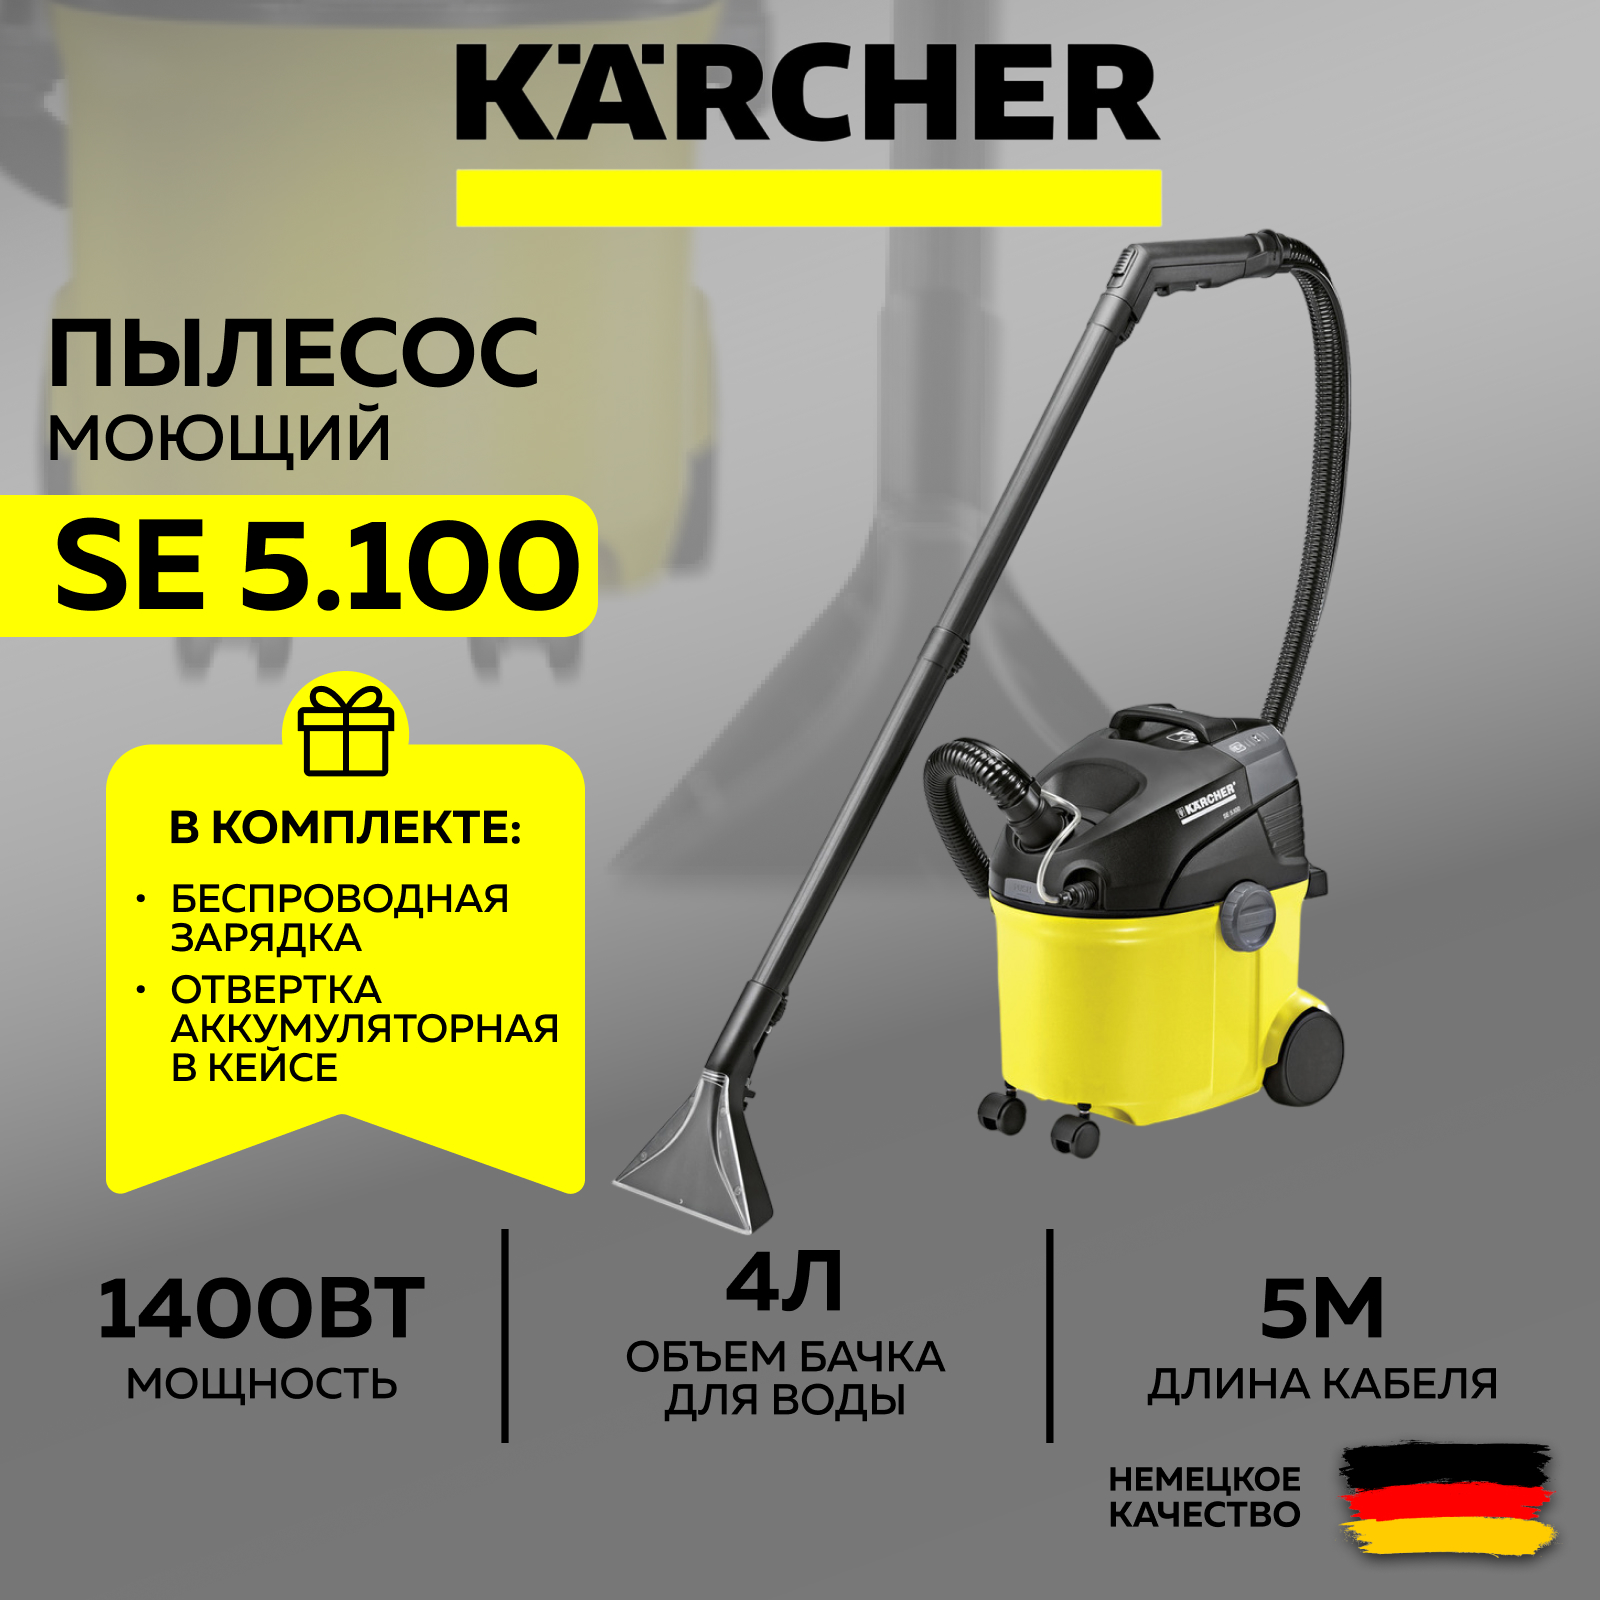 Моющий пылесос Karcher SE 5.100 1.081-200.0 + отвертка аккумуляторная+ночник-зарядка (SET) пылесос моющий karcher se 5 100 1400 вт 4 л